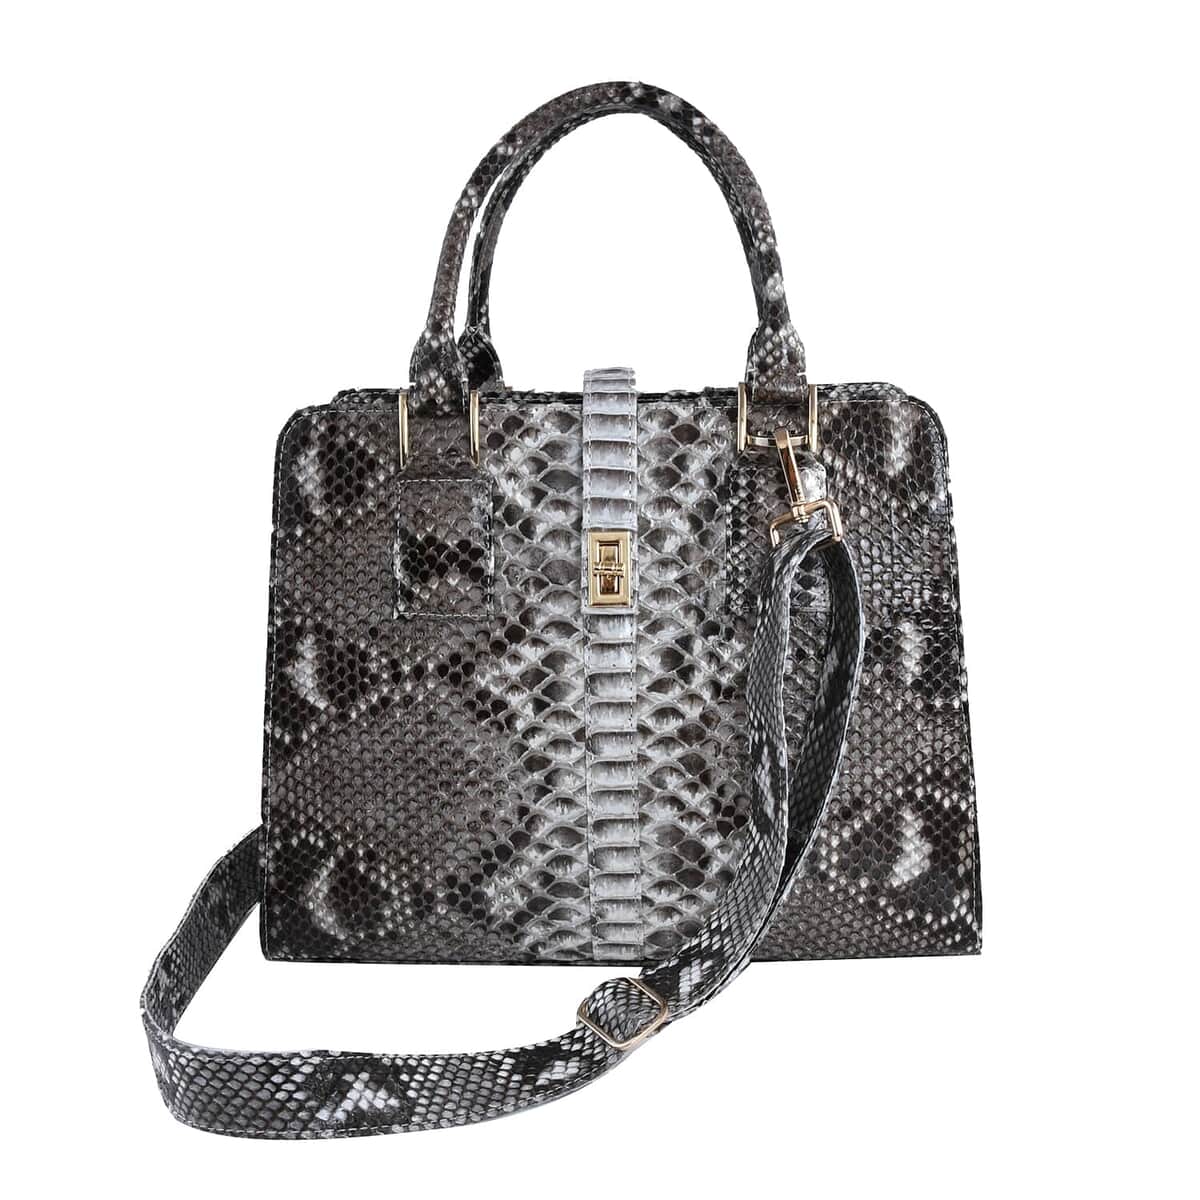 The Pelle Python Skin Bag Collection Natural Color 100% Genuine Python Leather Tote Bag, Shoulder Handbag, Designer Tote Bag For Women image number 0